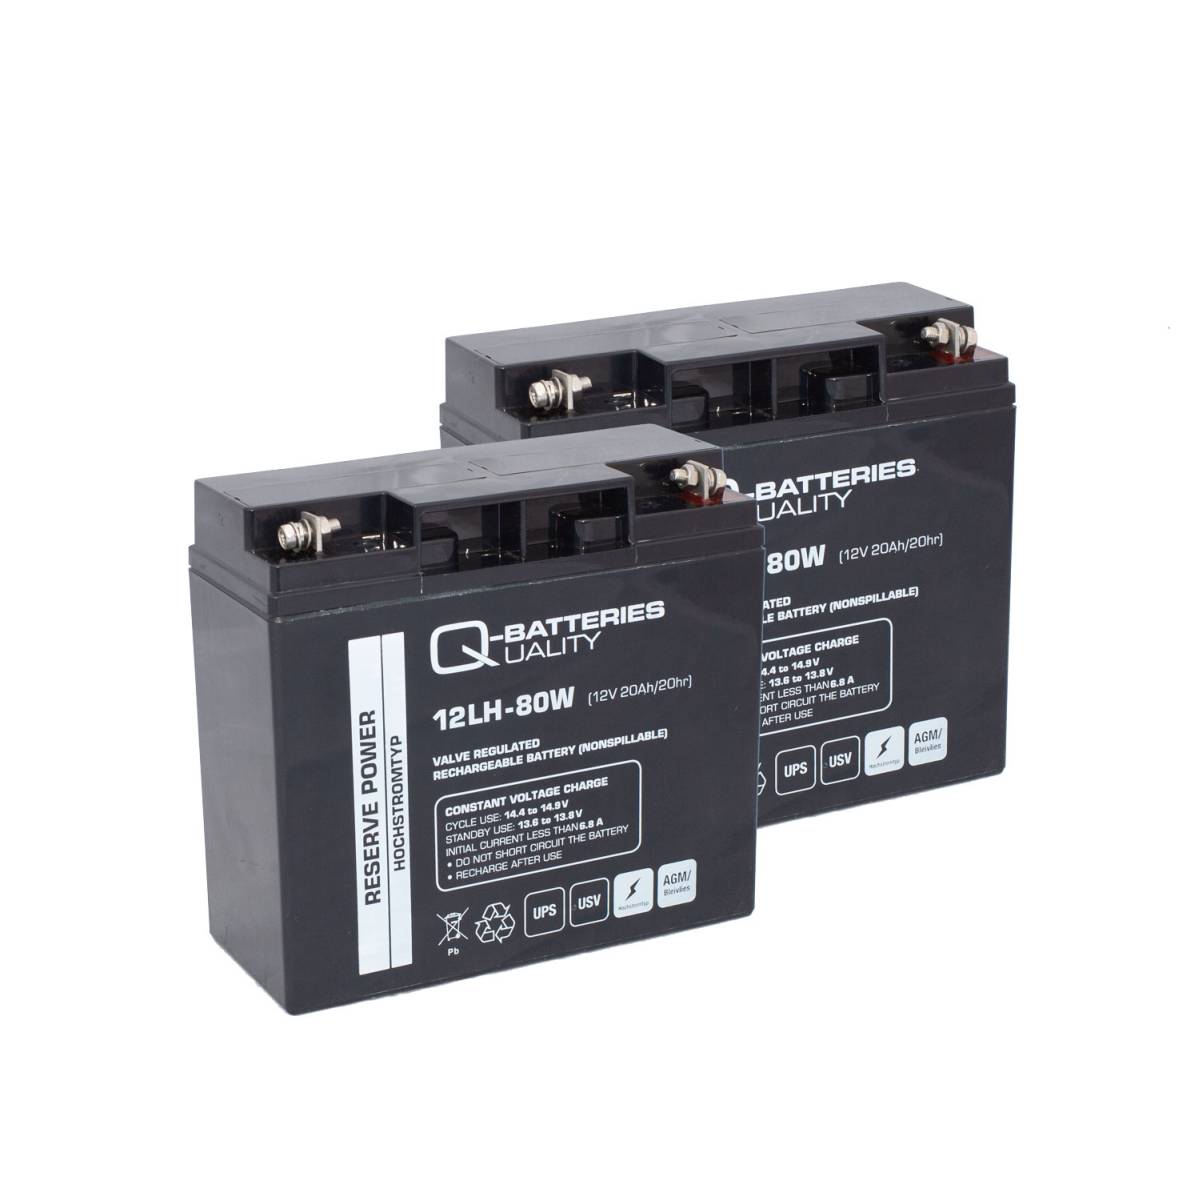 Batteria di ricambio RBC7 RBC 7 Batterie ad alta corrente per i sistemi APC UPS